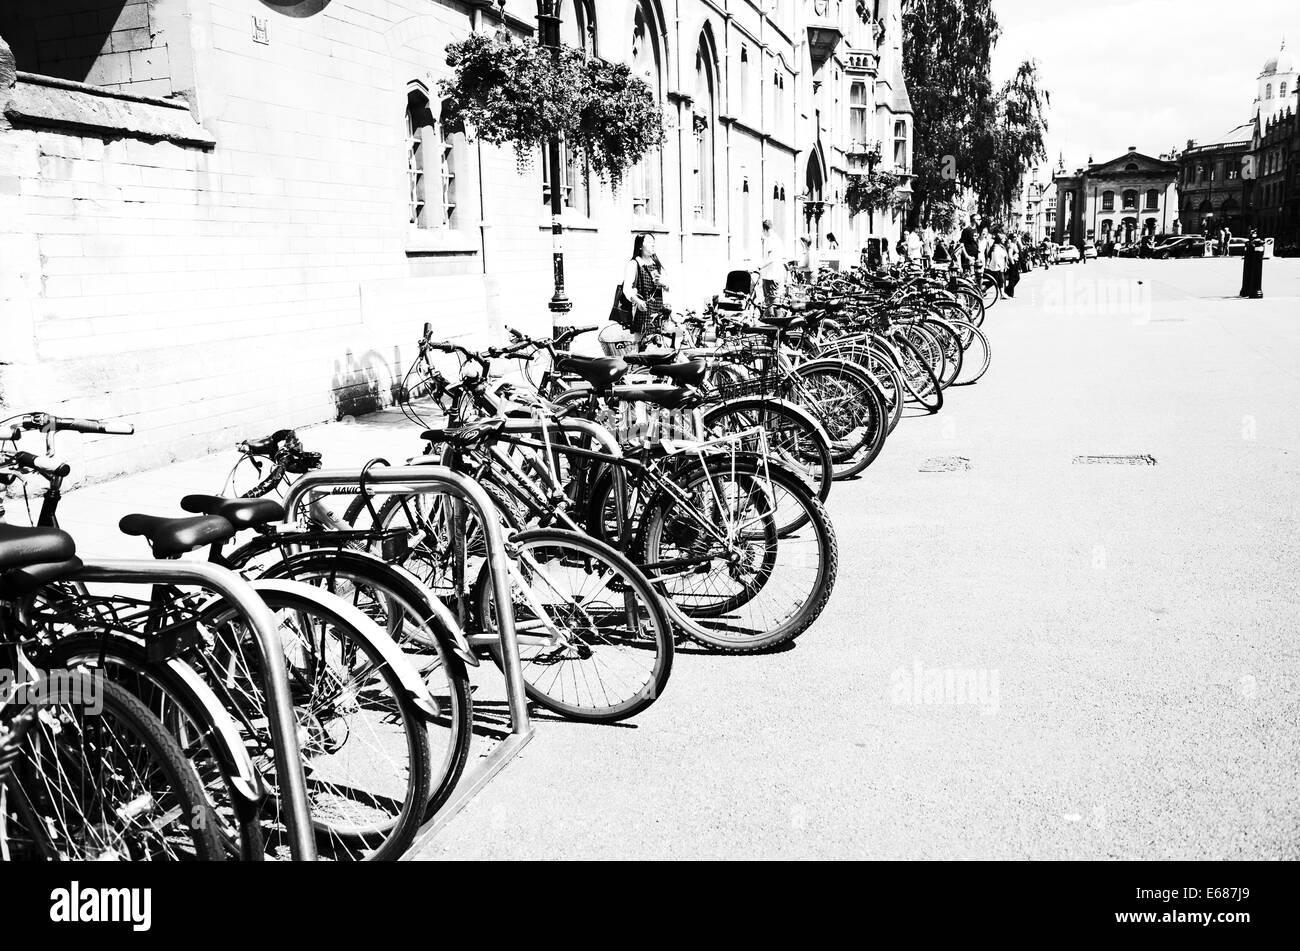 Fahrräder, Studenten, Oxford, schwarz / weiß Bild. Stockfoto